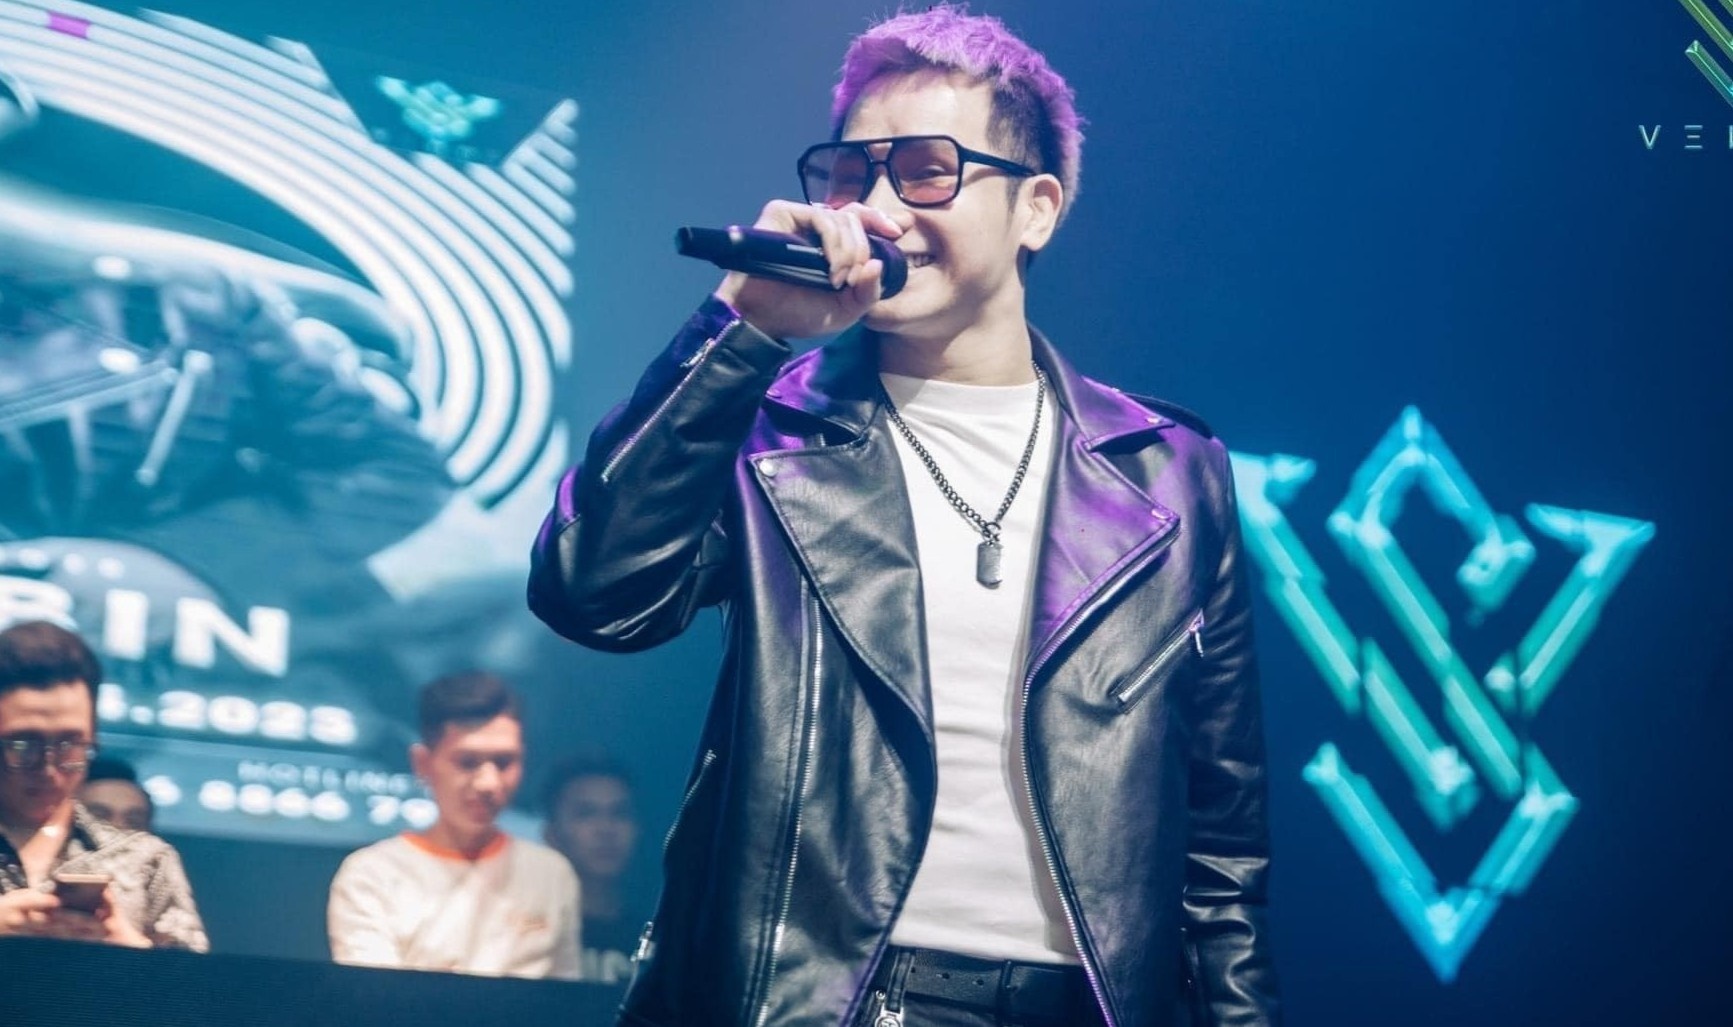 Ca sĩ Chu Bin bị loại khỏi đêm nhạc vì vướng ồn ào tình ái, động thái mạnh của BTC - Ảnh 1